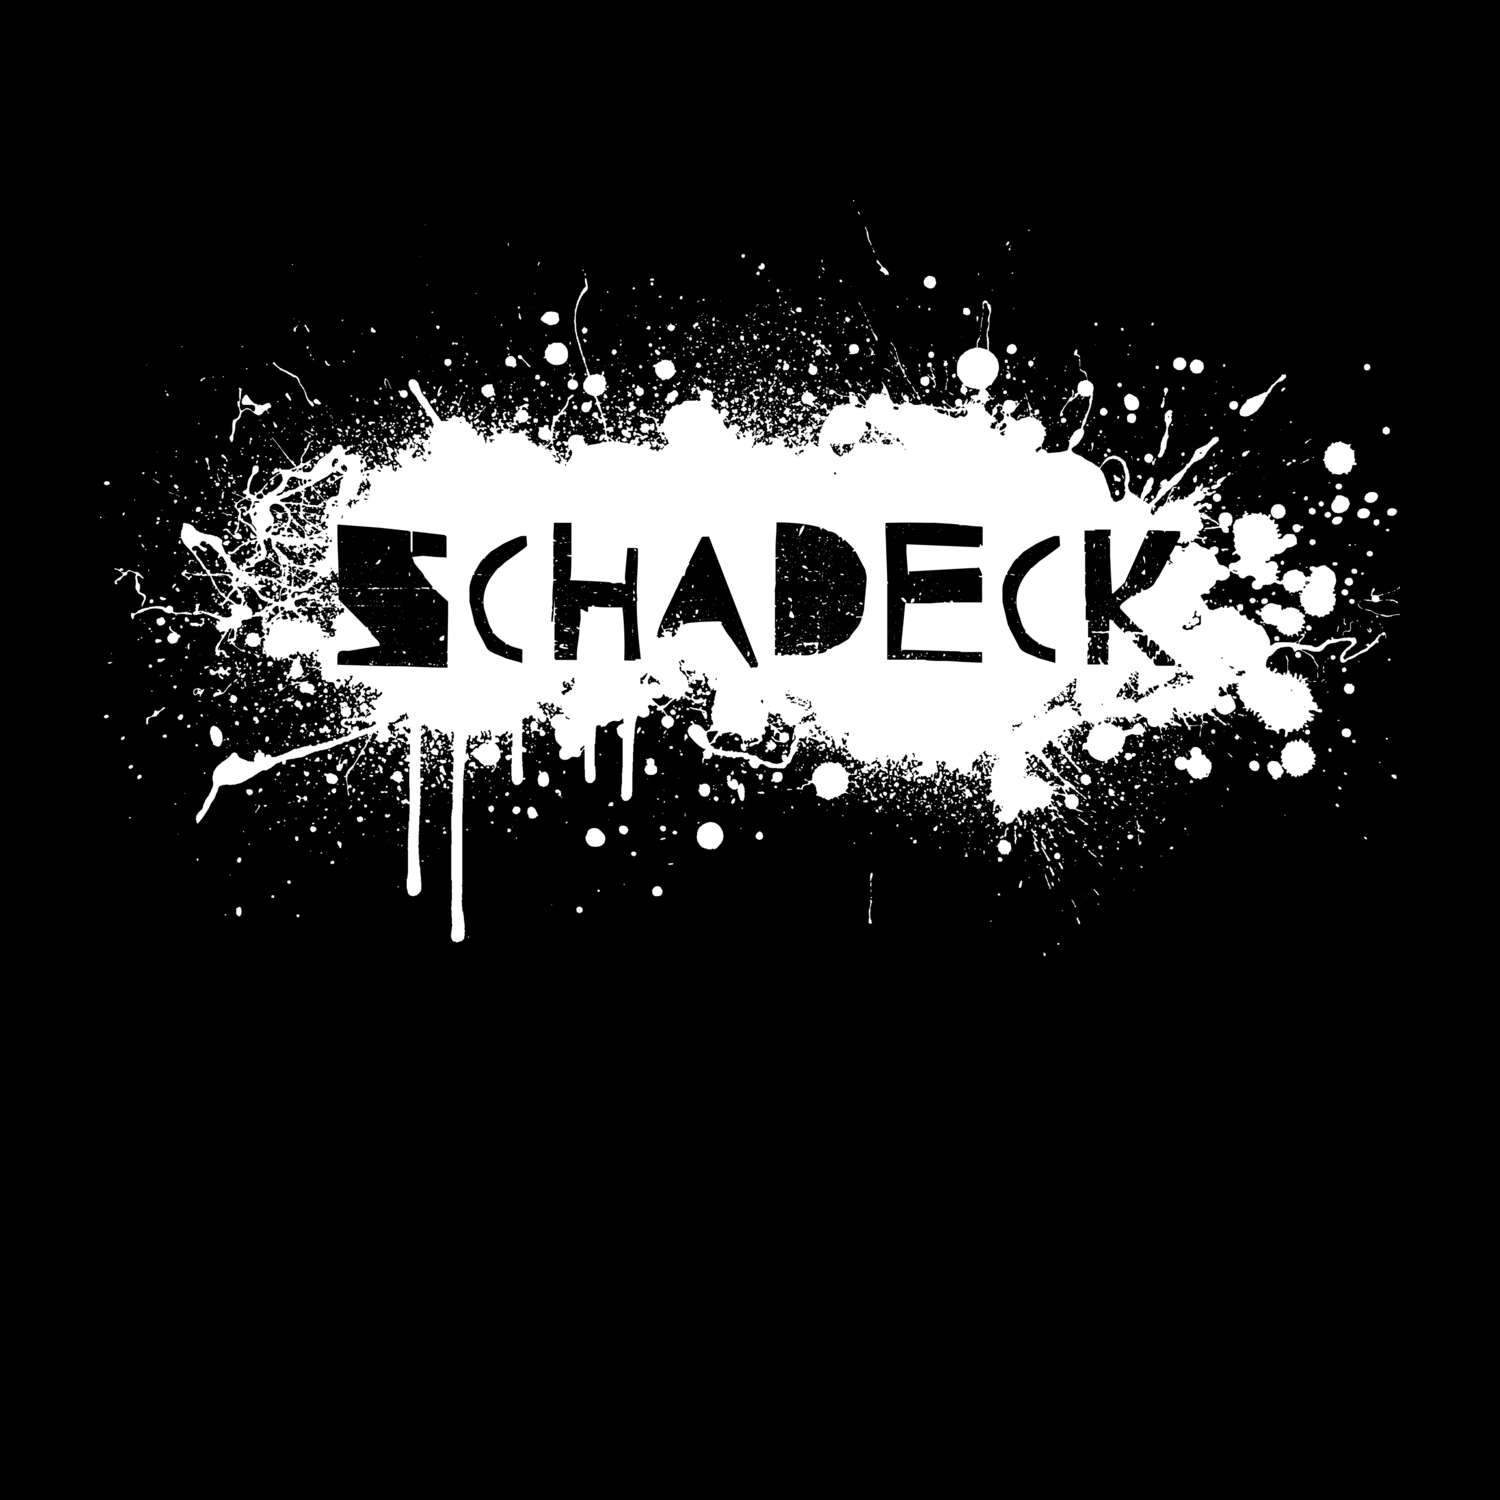 Schadeck T-Shirt »Paint Splash Punk«